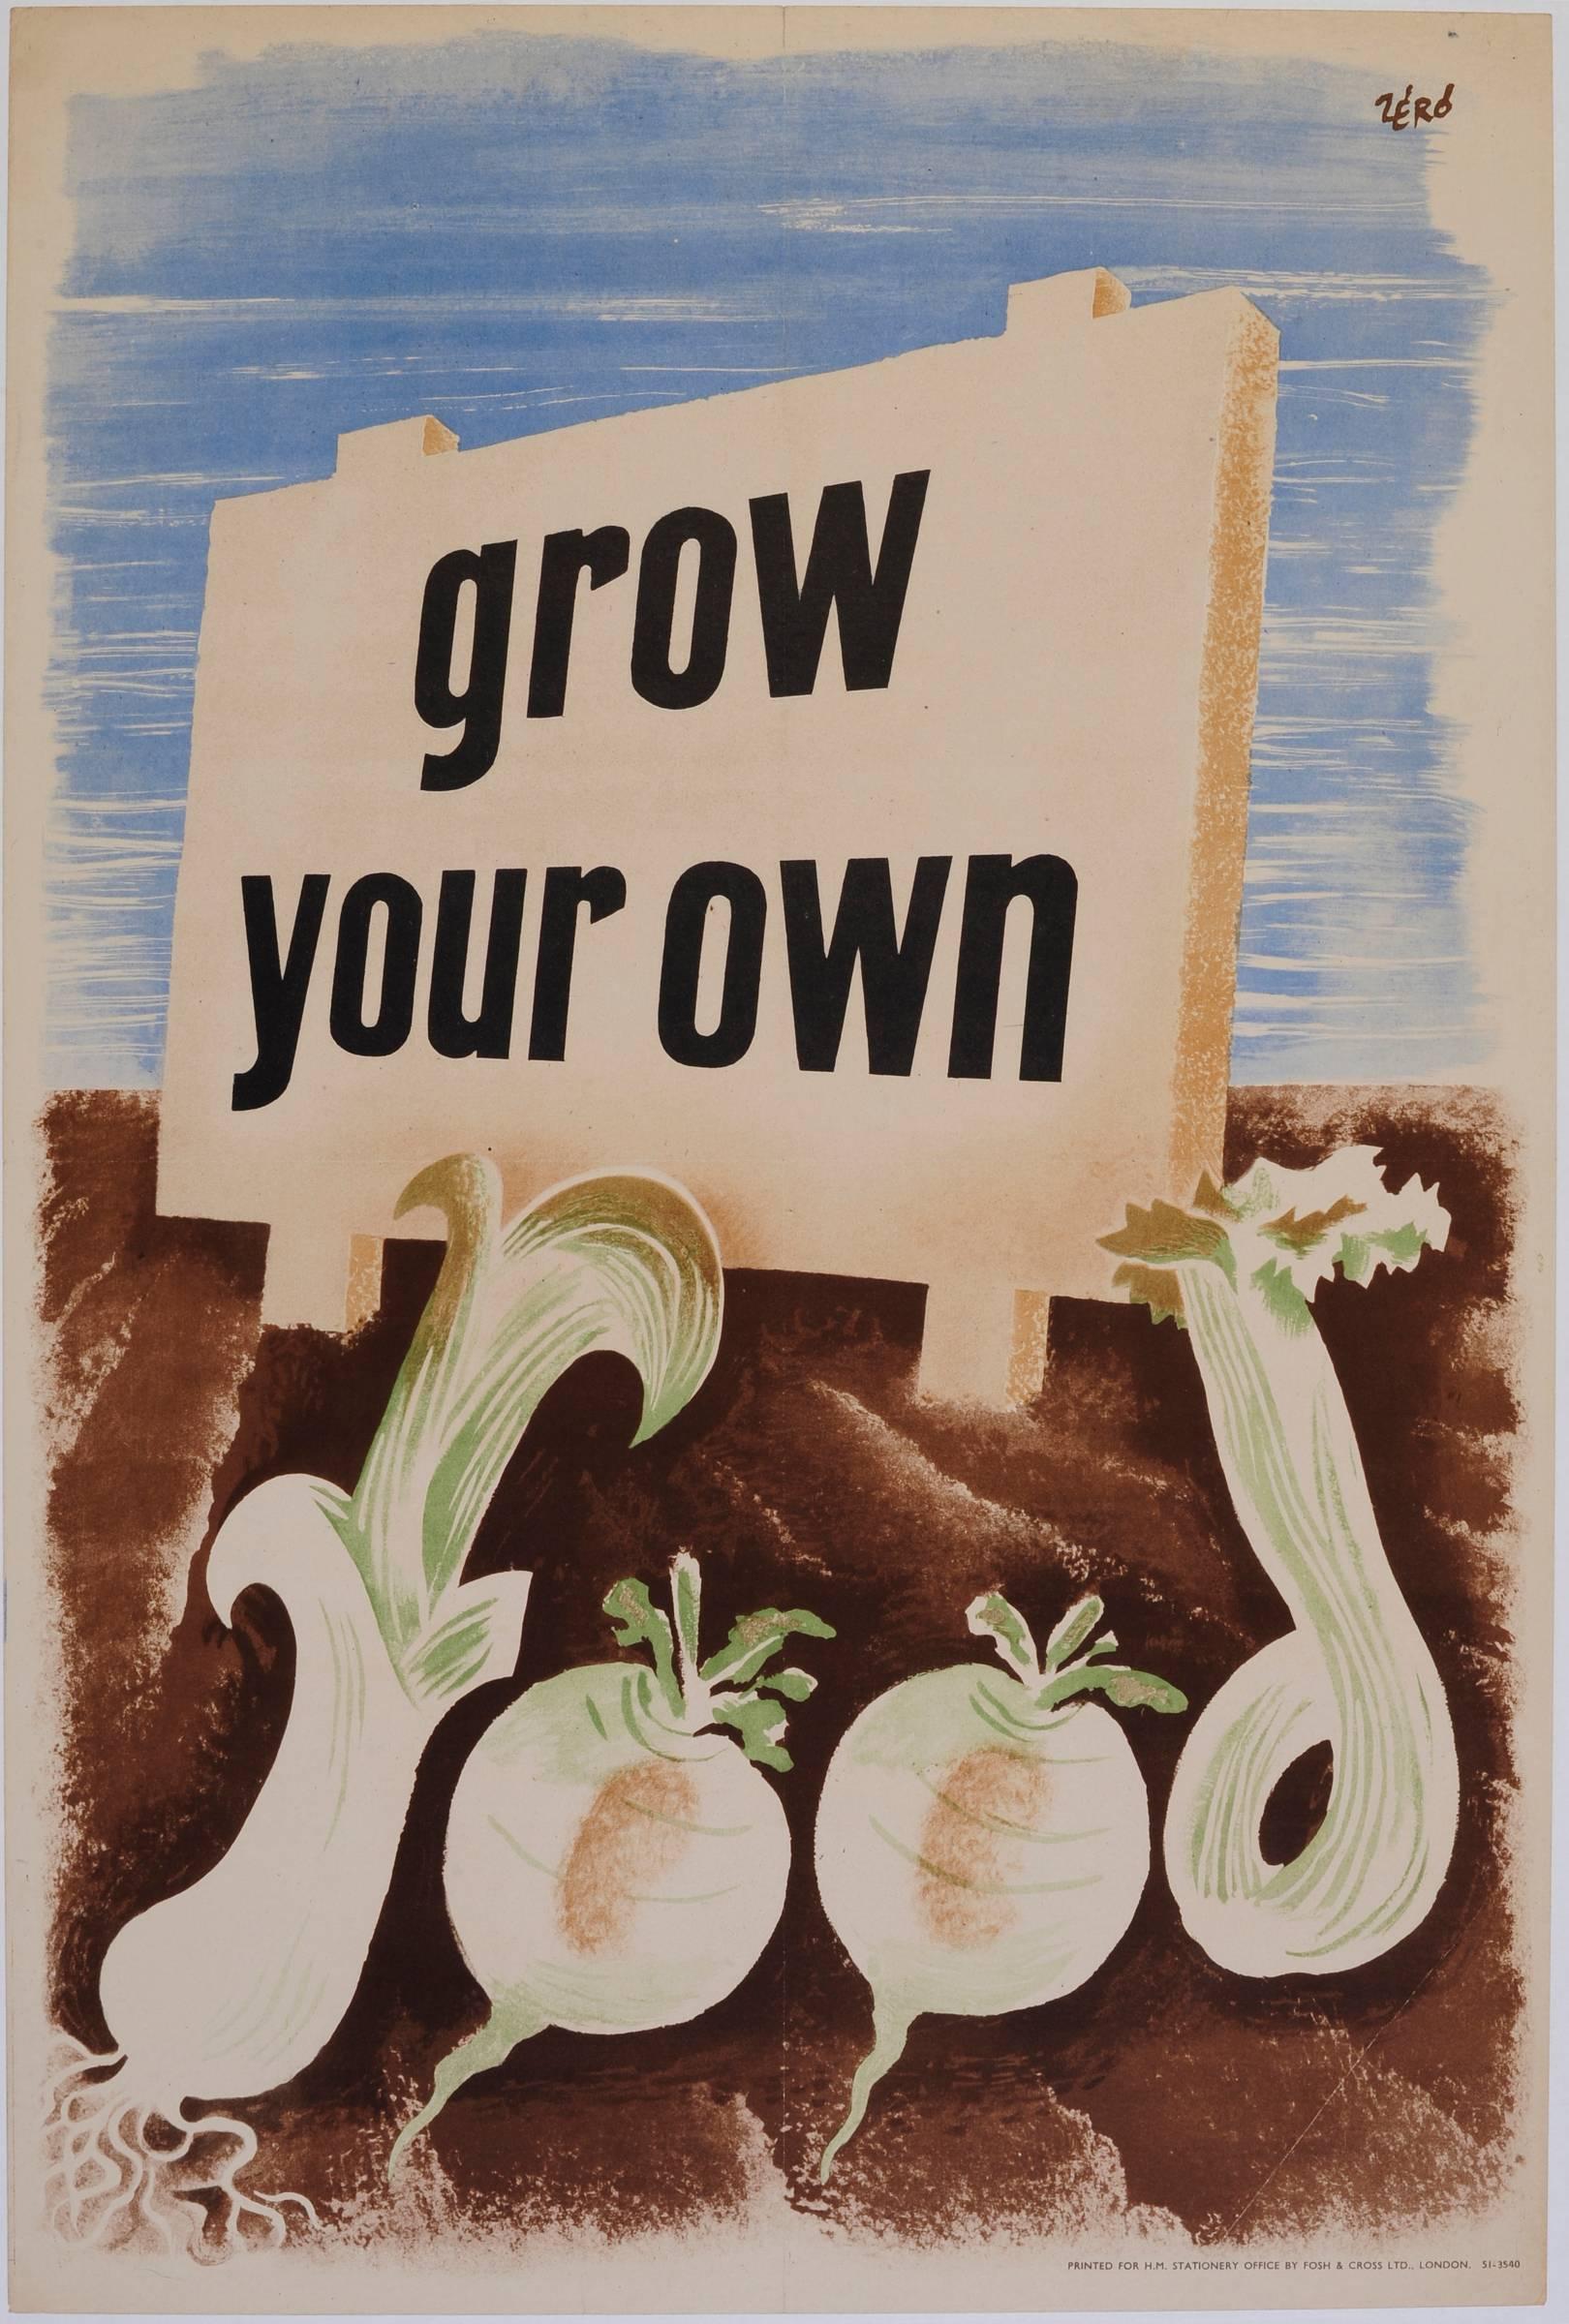 'Zero' Hans Schleger Grow Your Own Food Surreal Original Vintage Poster